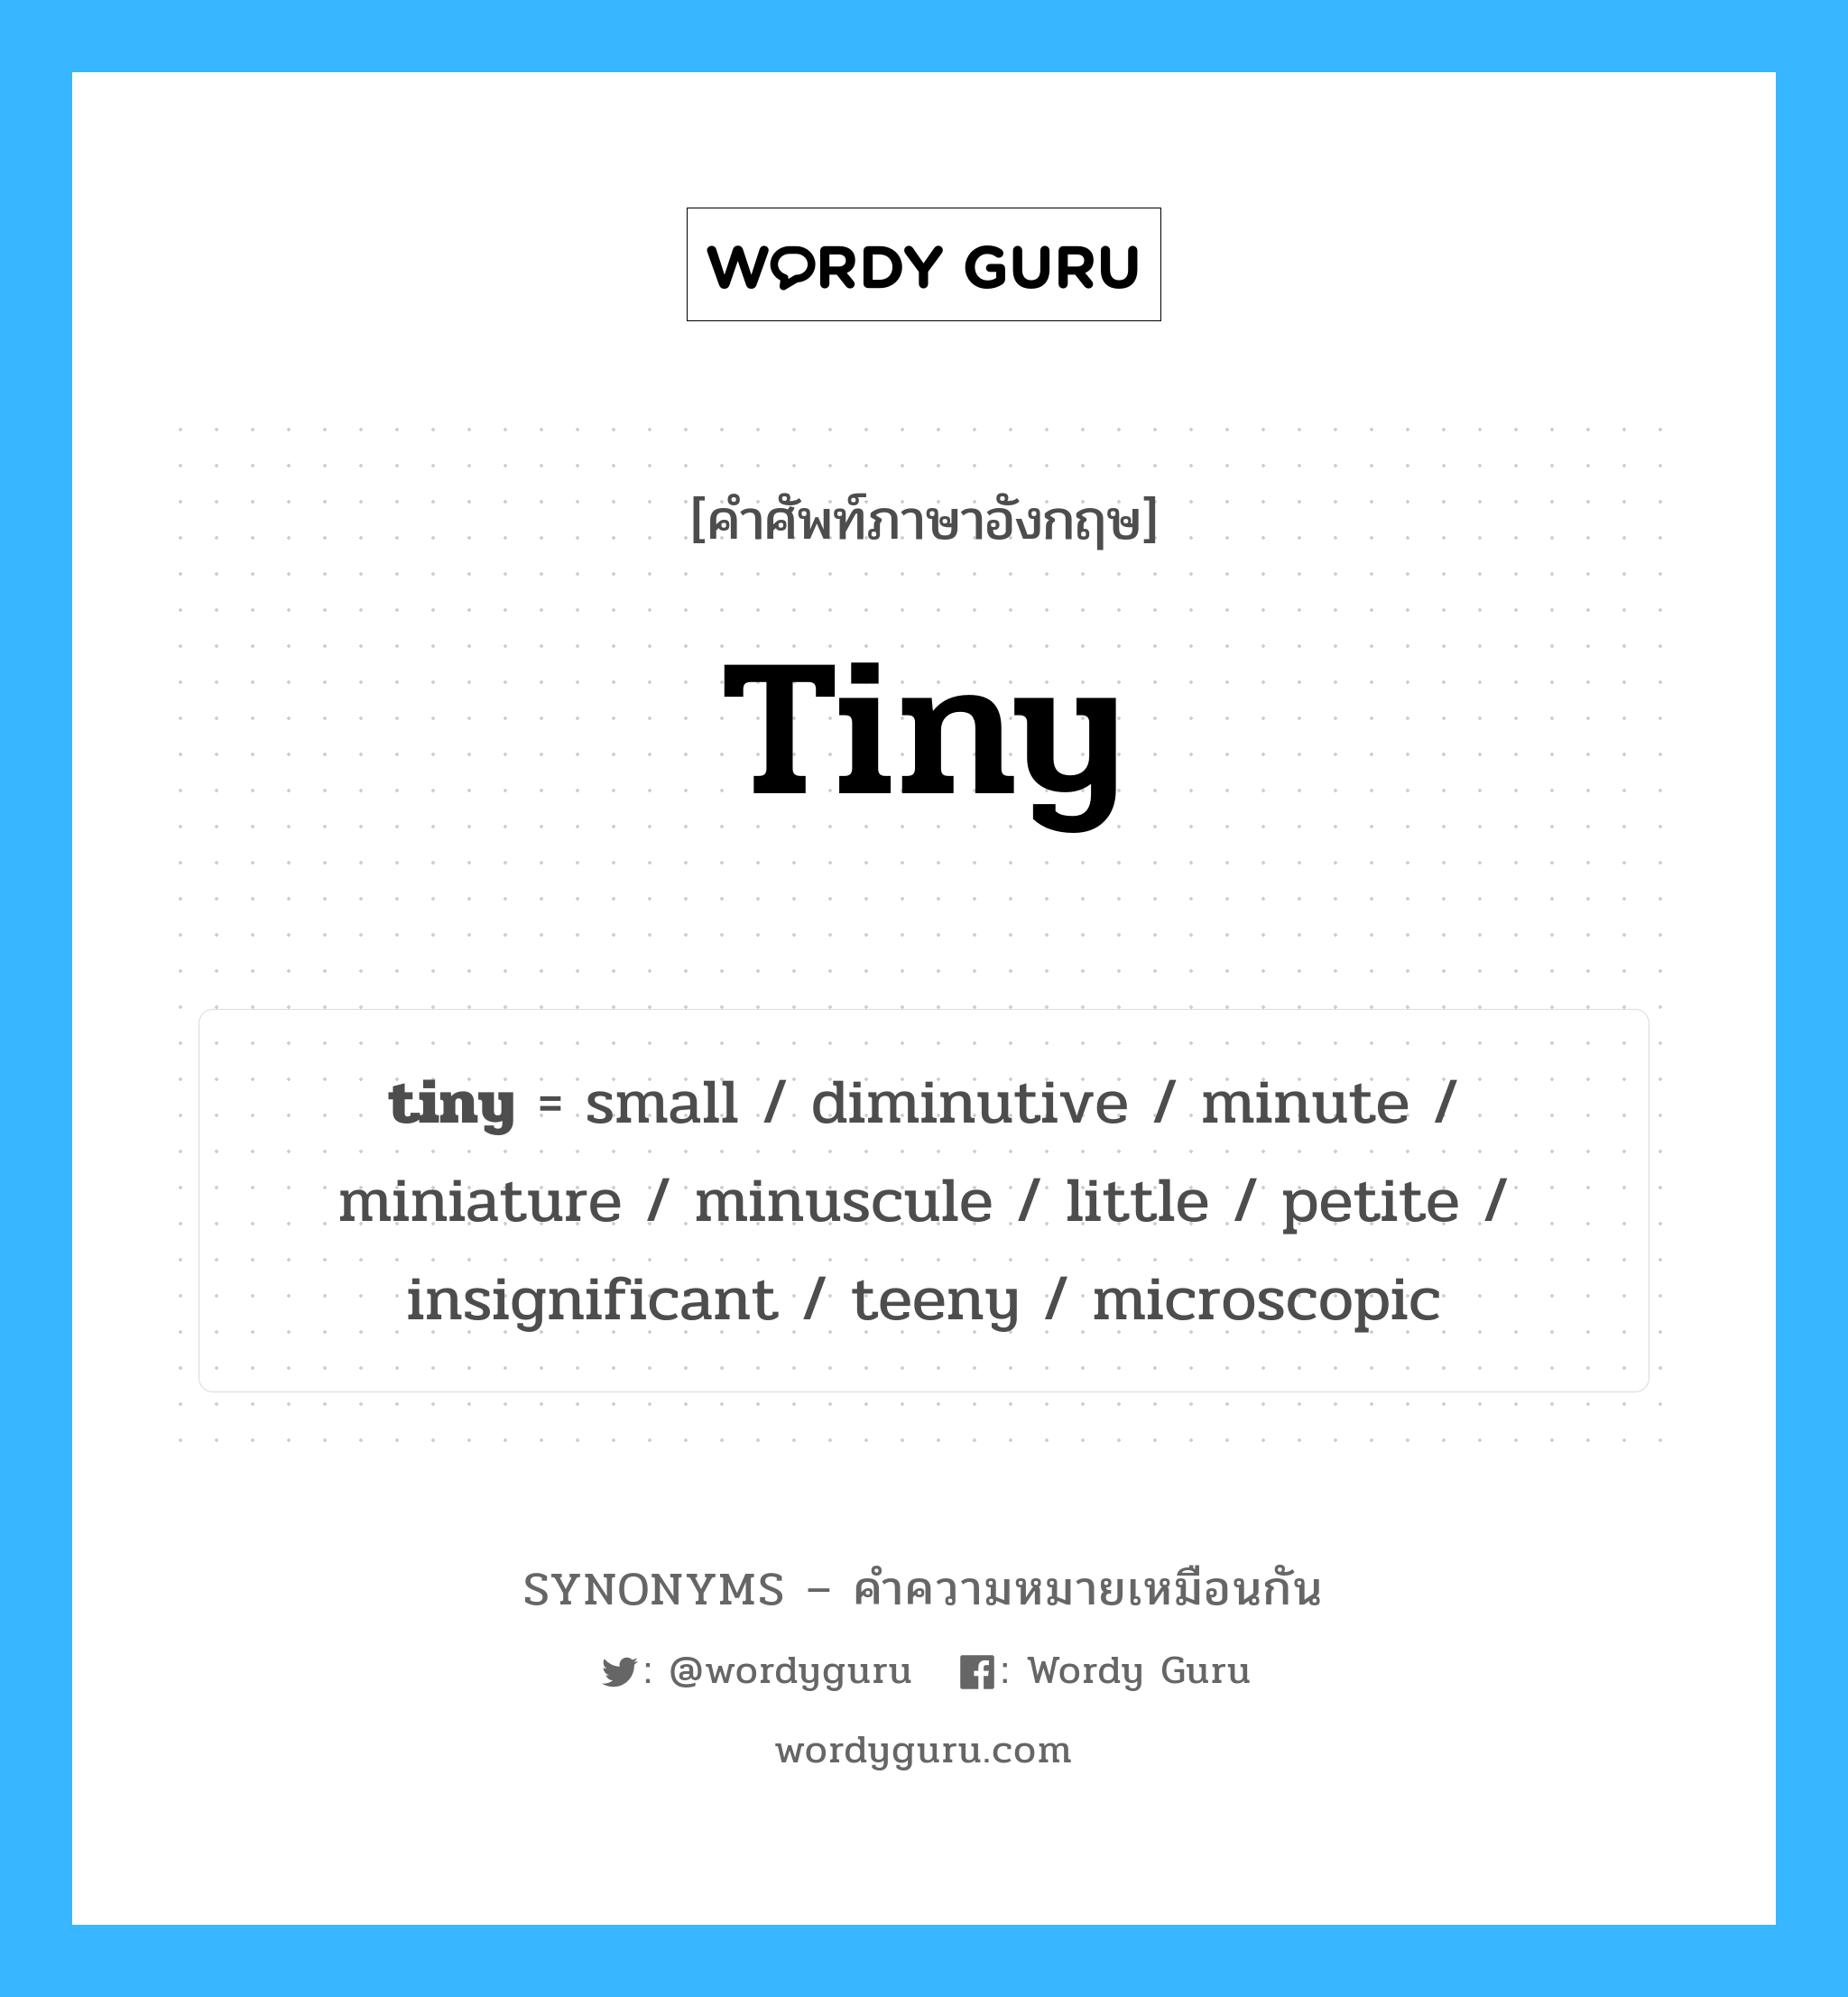 diminutive เป็นหนึ่งใน tiny และมีคำอื่น ๆ อีกดังนี้, คำศัพท์ภาษาอังกฤษ diminutive ความหมายคล้ายกันกับ tiny แปลว่า เล็ก หมวด tiny